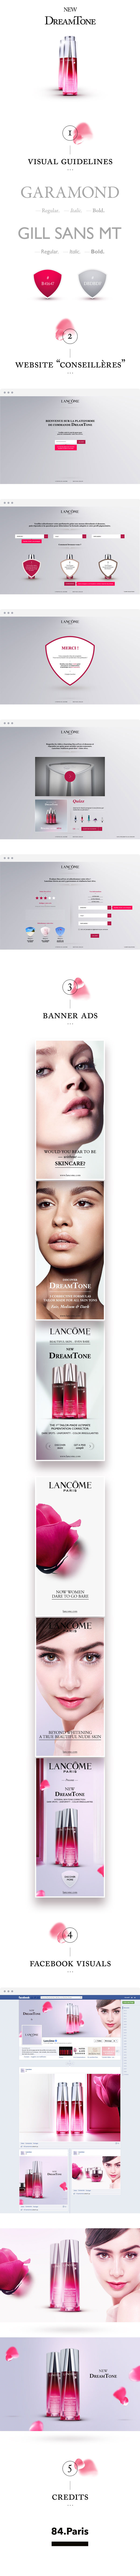 Lancome dreamtone Paris product skincare Moinzek digital campaign